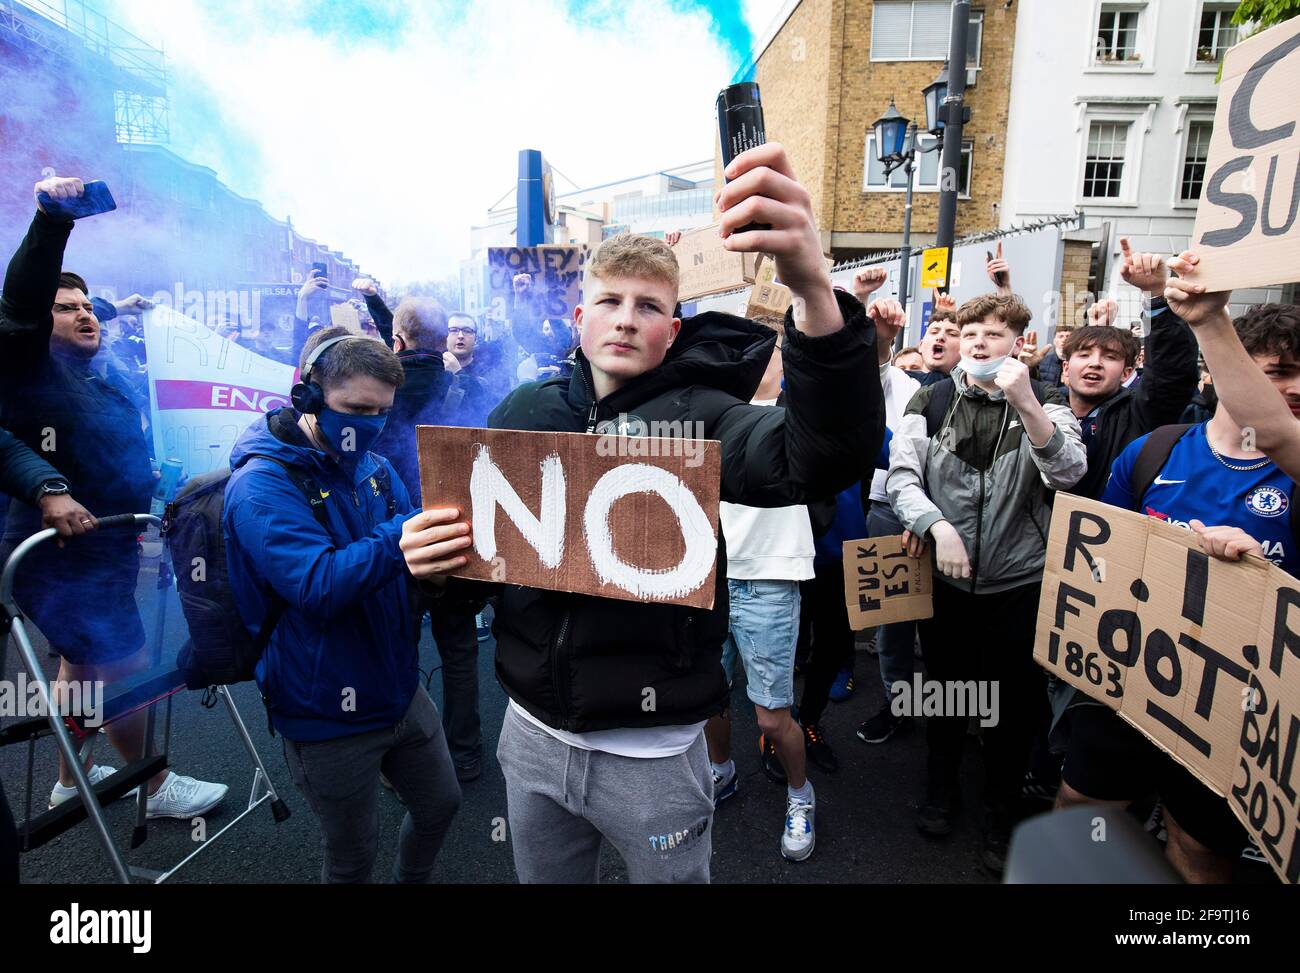 Londra, Regno Unito. 20 aprile 2021. I tifosi protestano fuori dallo stadio contro la proposta di Super League europea in vista della partita tra Chelsea e Brighton allo stadio Stamford Bridge il 20 aprile 2021 a Londra, Regno Unito Foto Stock